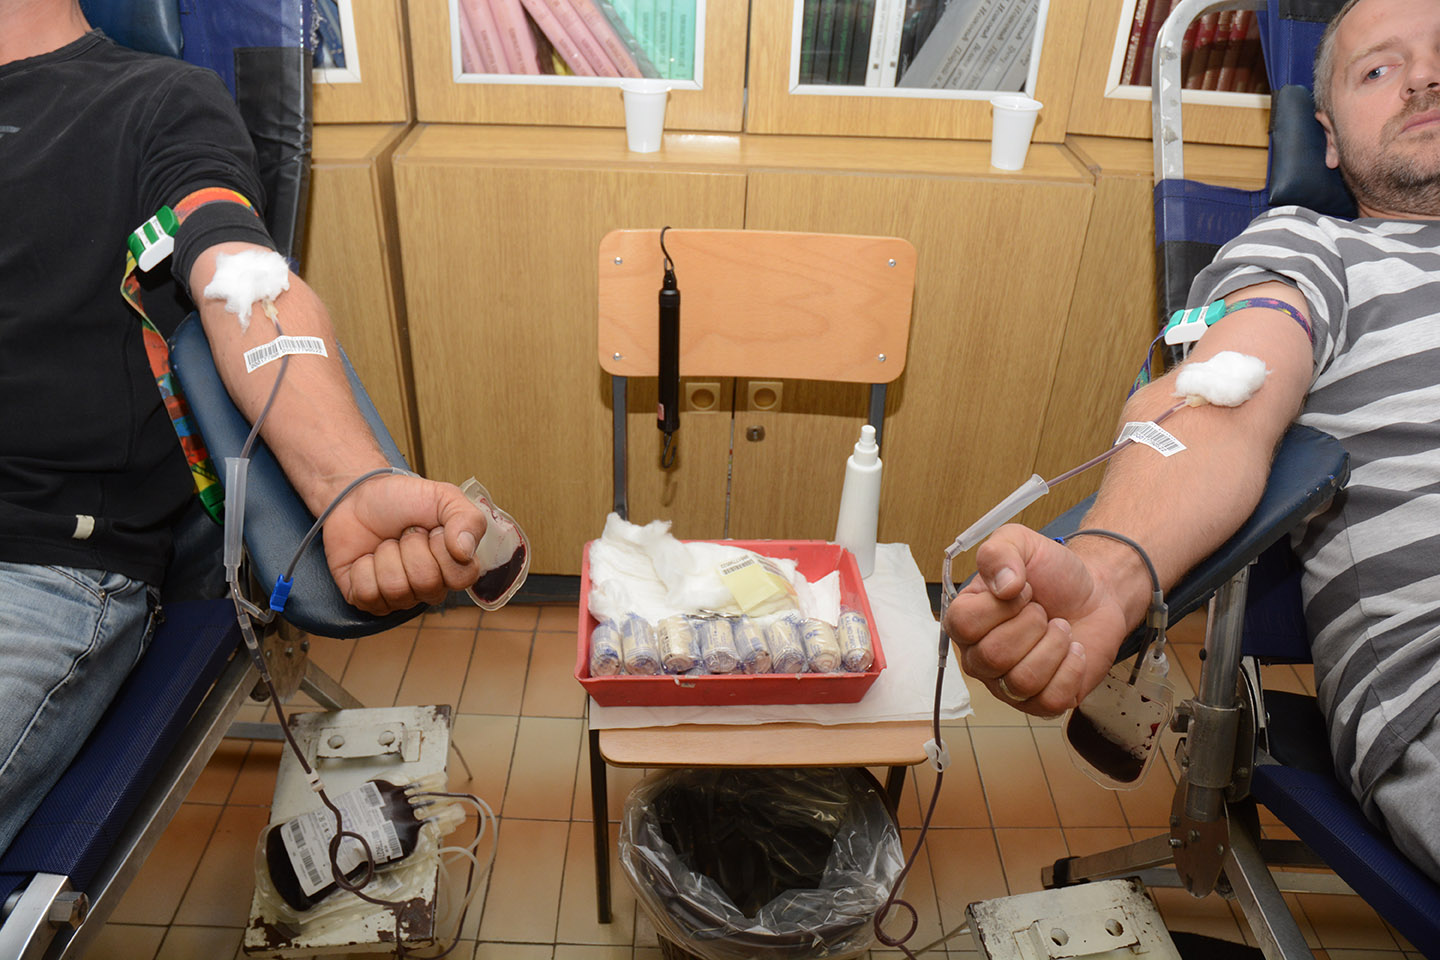 Crveni krst Opovo: Akcija dobrovoljnog davanja krvi 13. februara